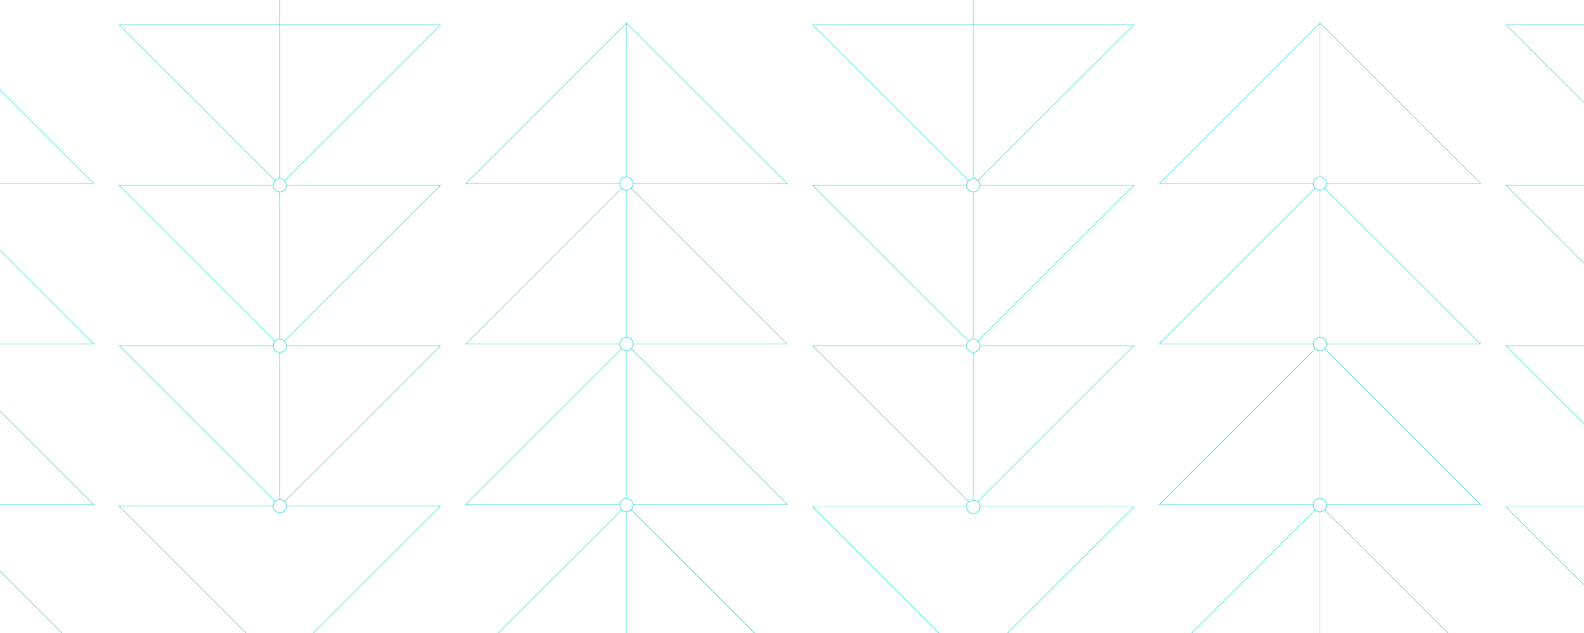 繊細な三角形のパターンを形成する細い青い線を示す図